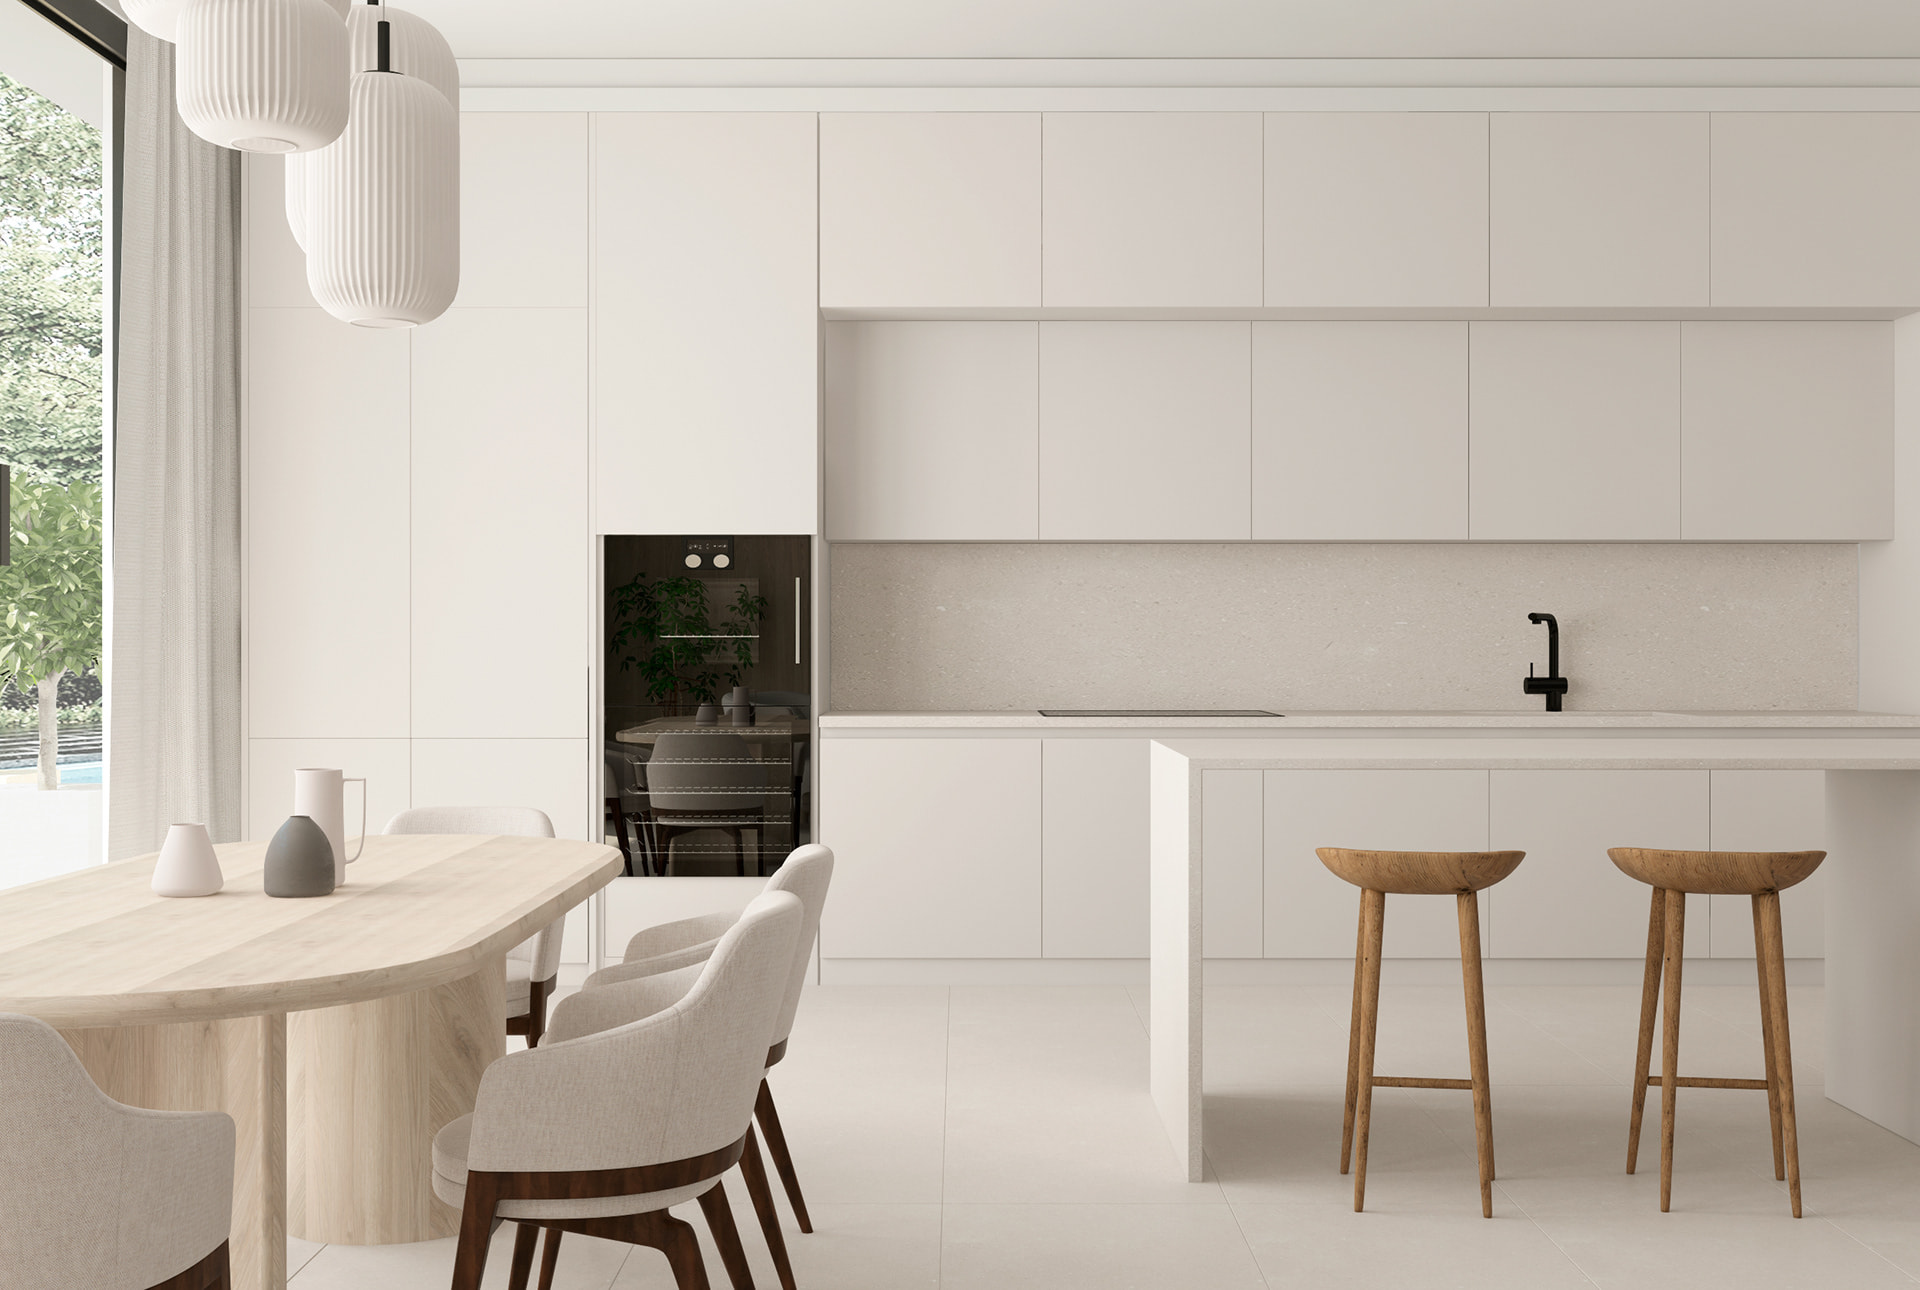 Thiết kế nội thất phòng bếp nhà ống theo phong cách tối giản